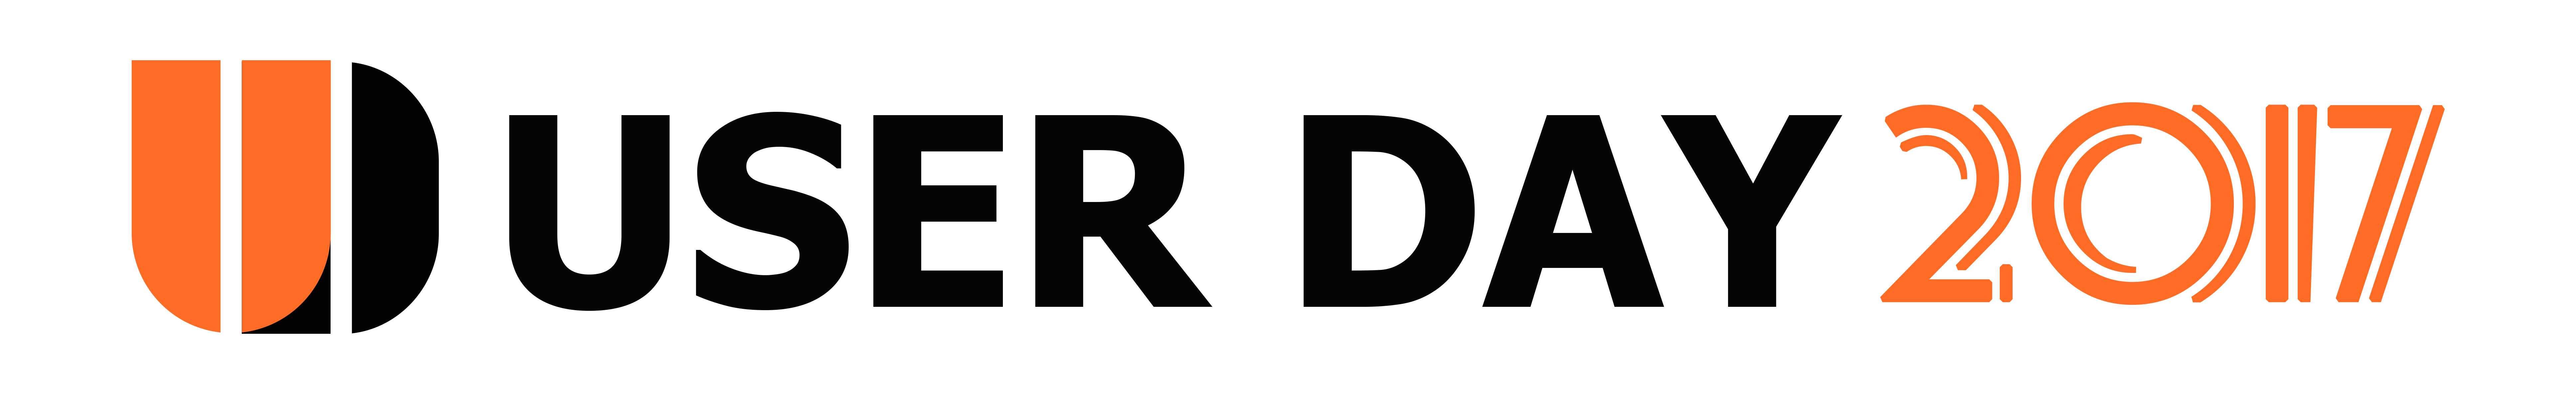 Logo User Day 2017